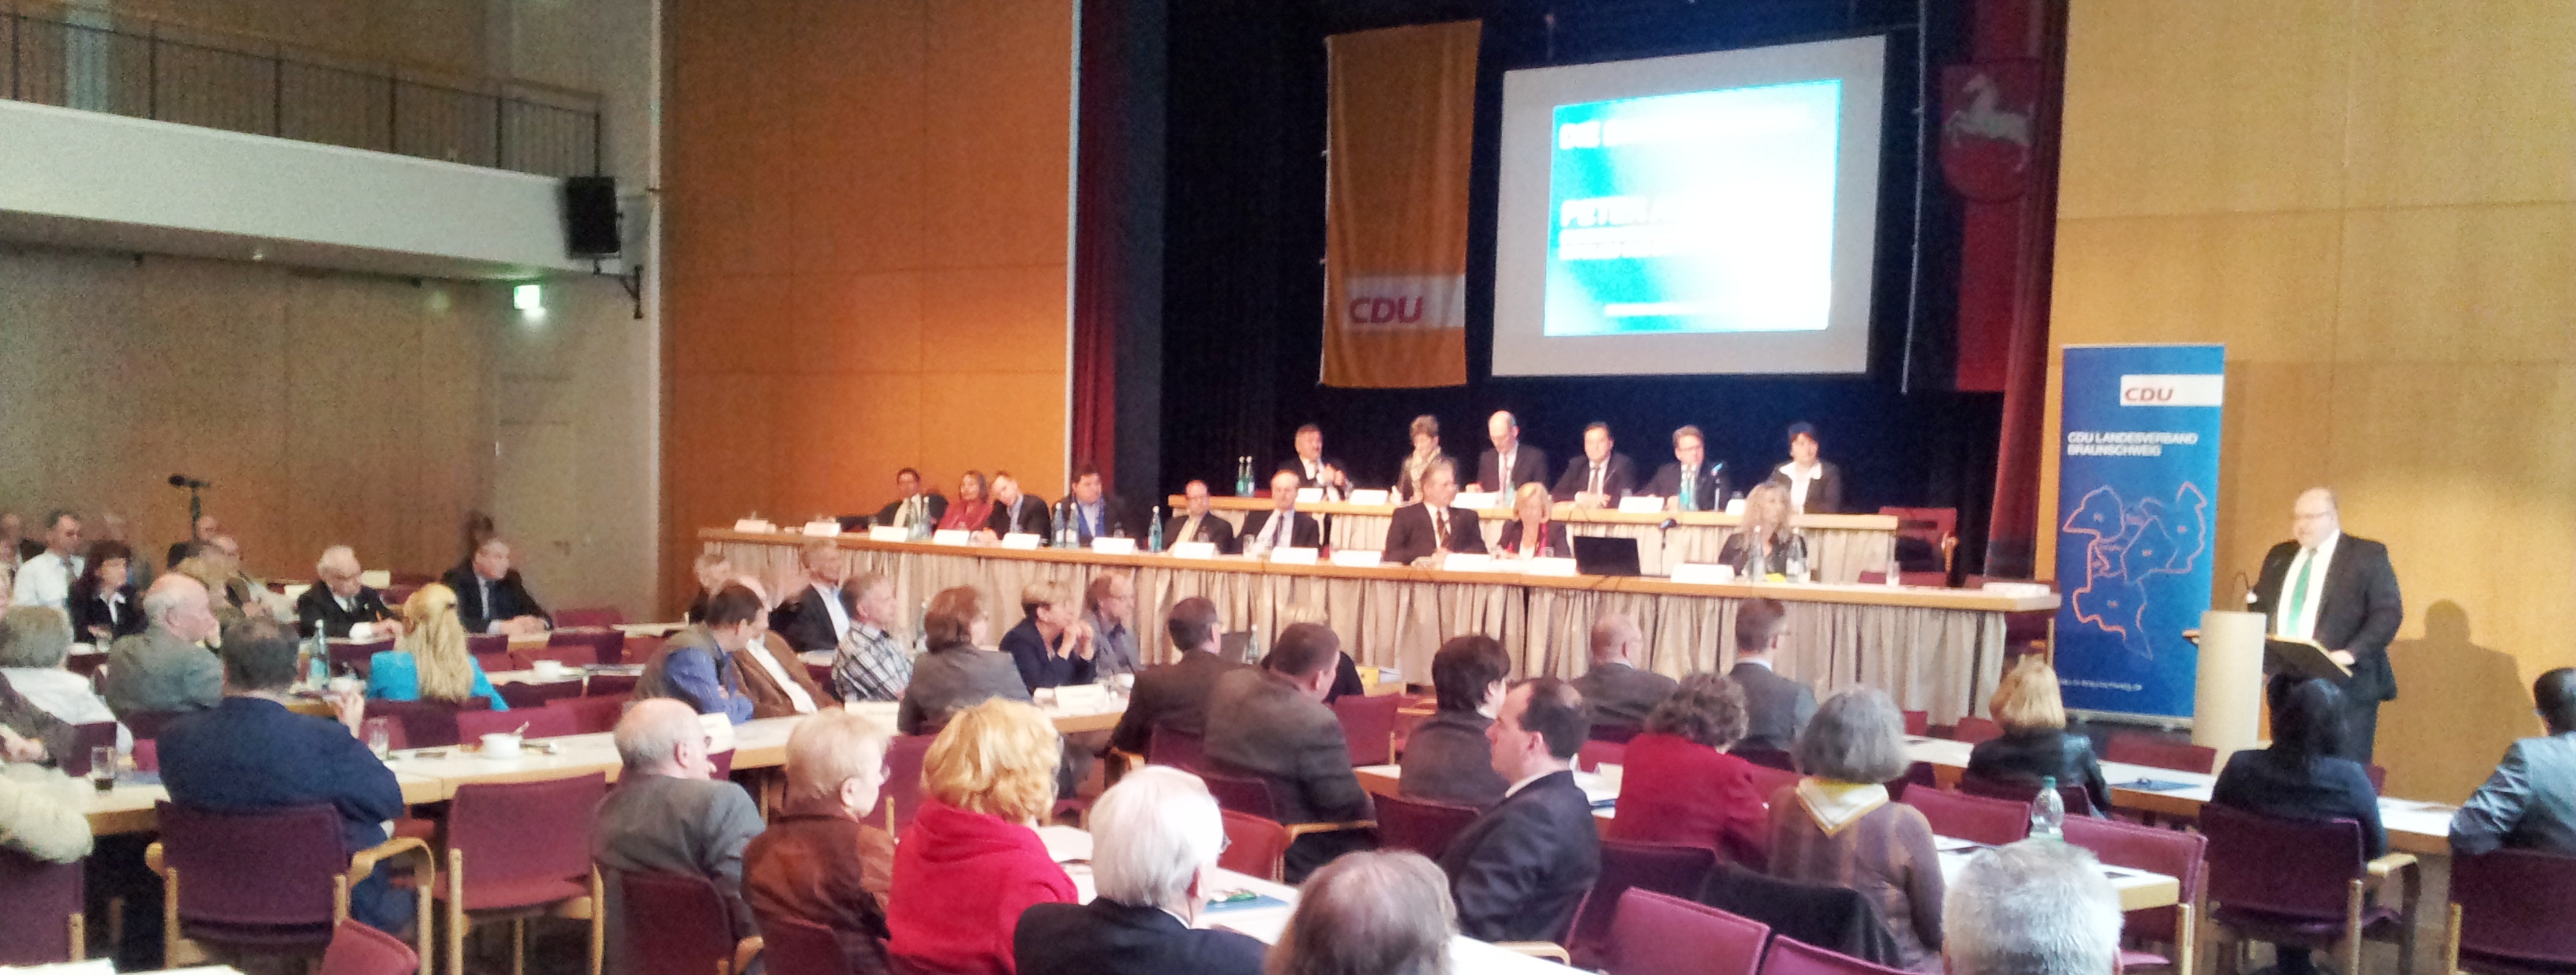 Im Peiner Forum findet der Landesparteitag 2013 statt mit Bundesumweltminister Peter Altmaier.